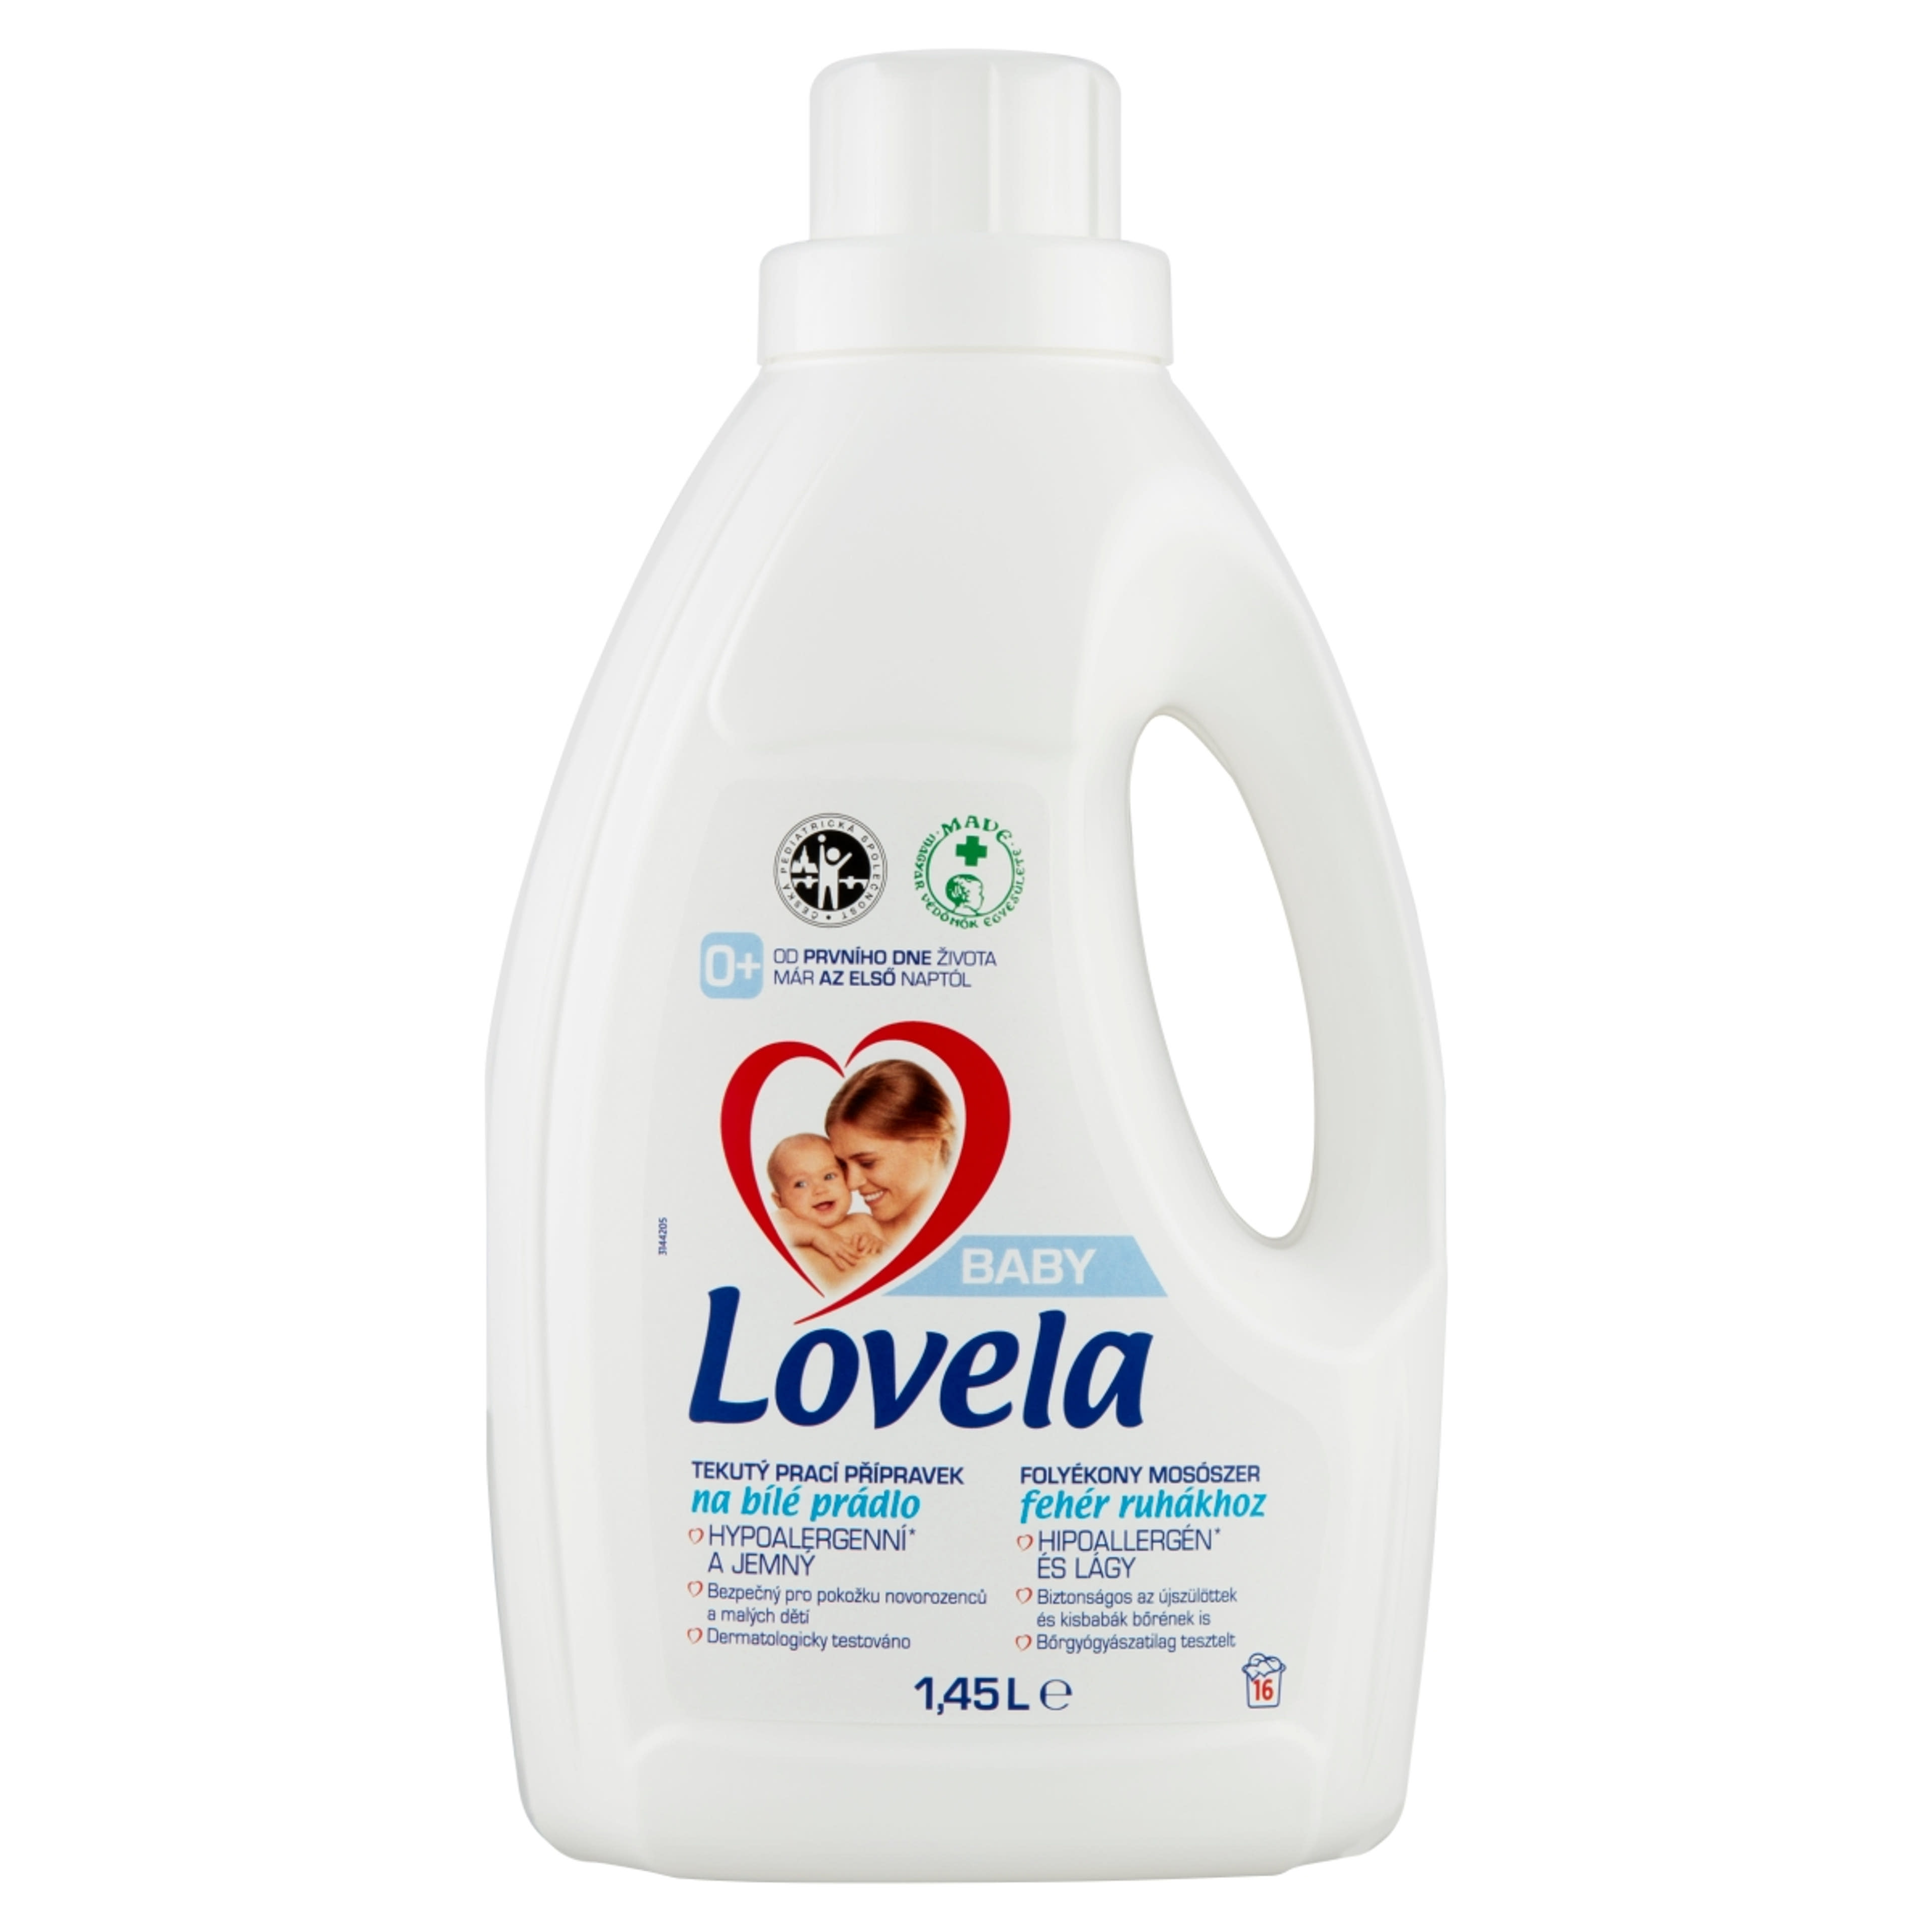 Lovela Baby folyékony mosószer fehér ruhákhoz - 1450 ml